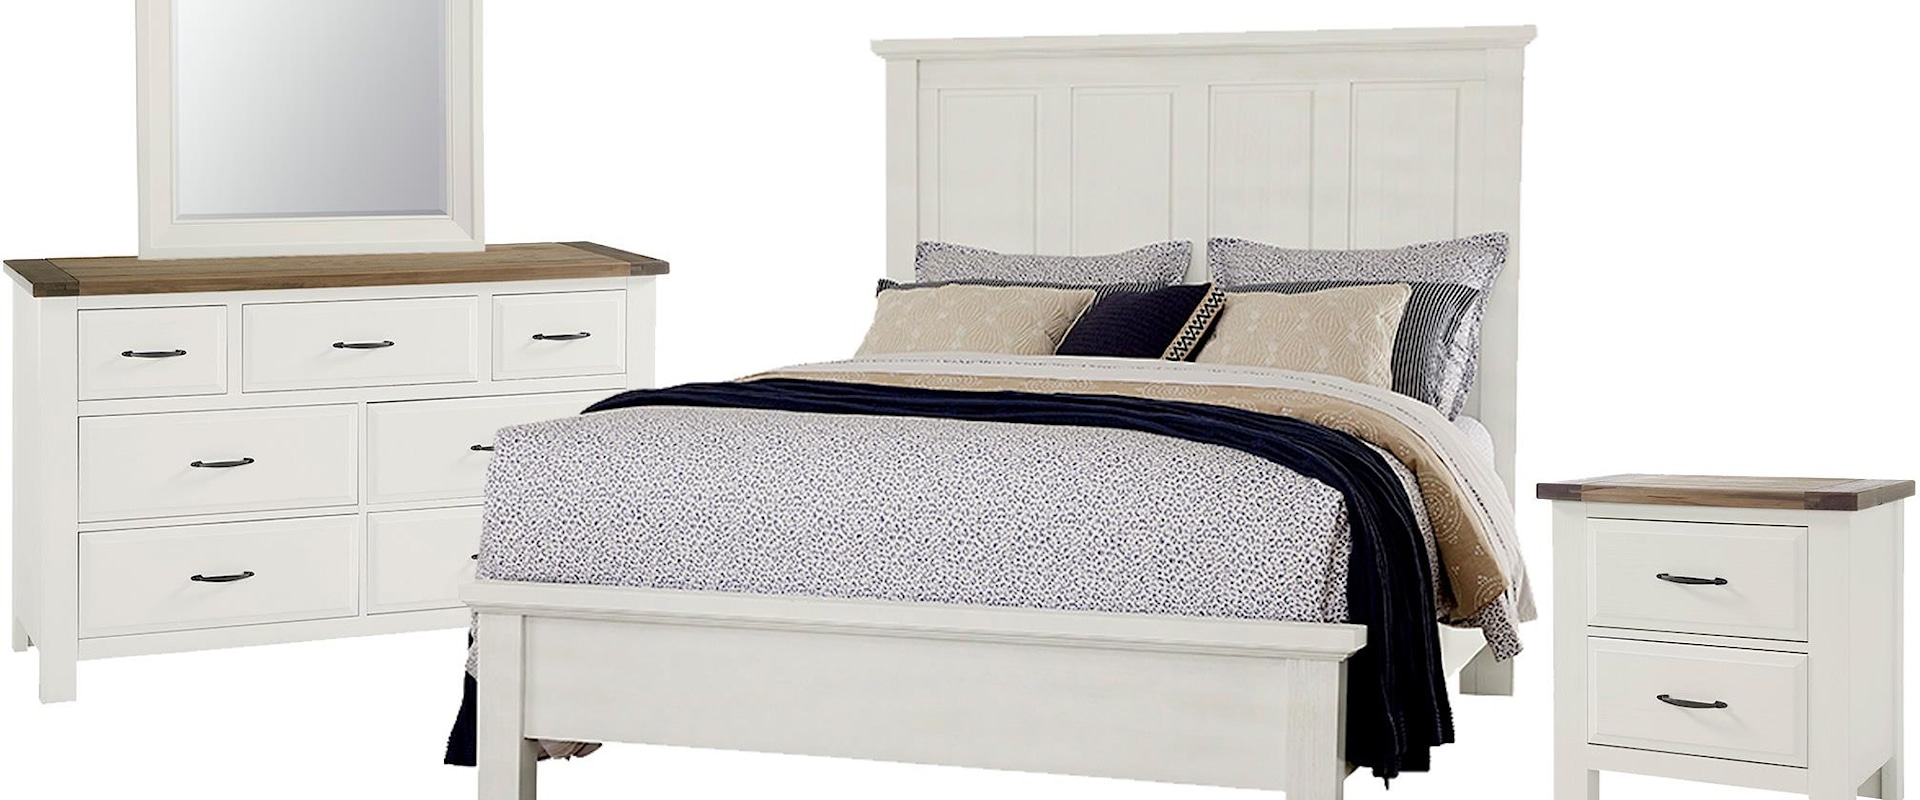 Queen  Manison Bed, 7 Drawer Dresser, Landscape Mirror, and 2 Drawer Nightstand